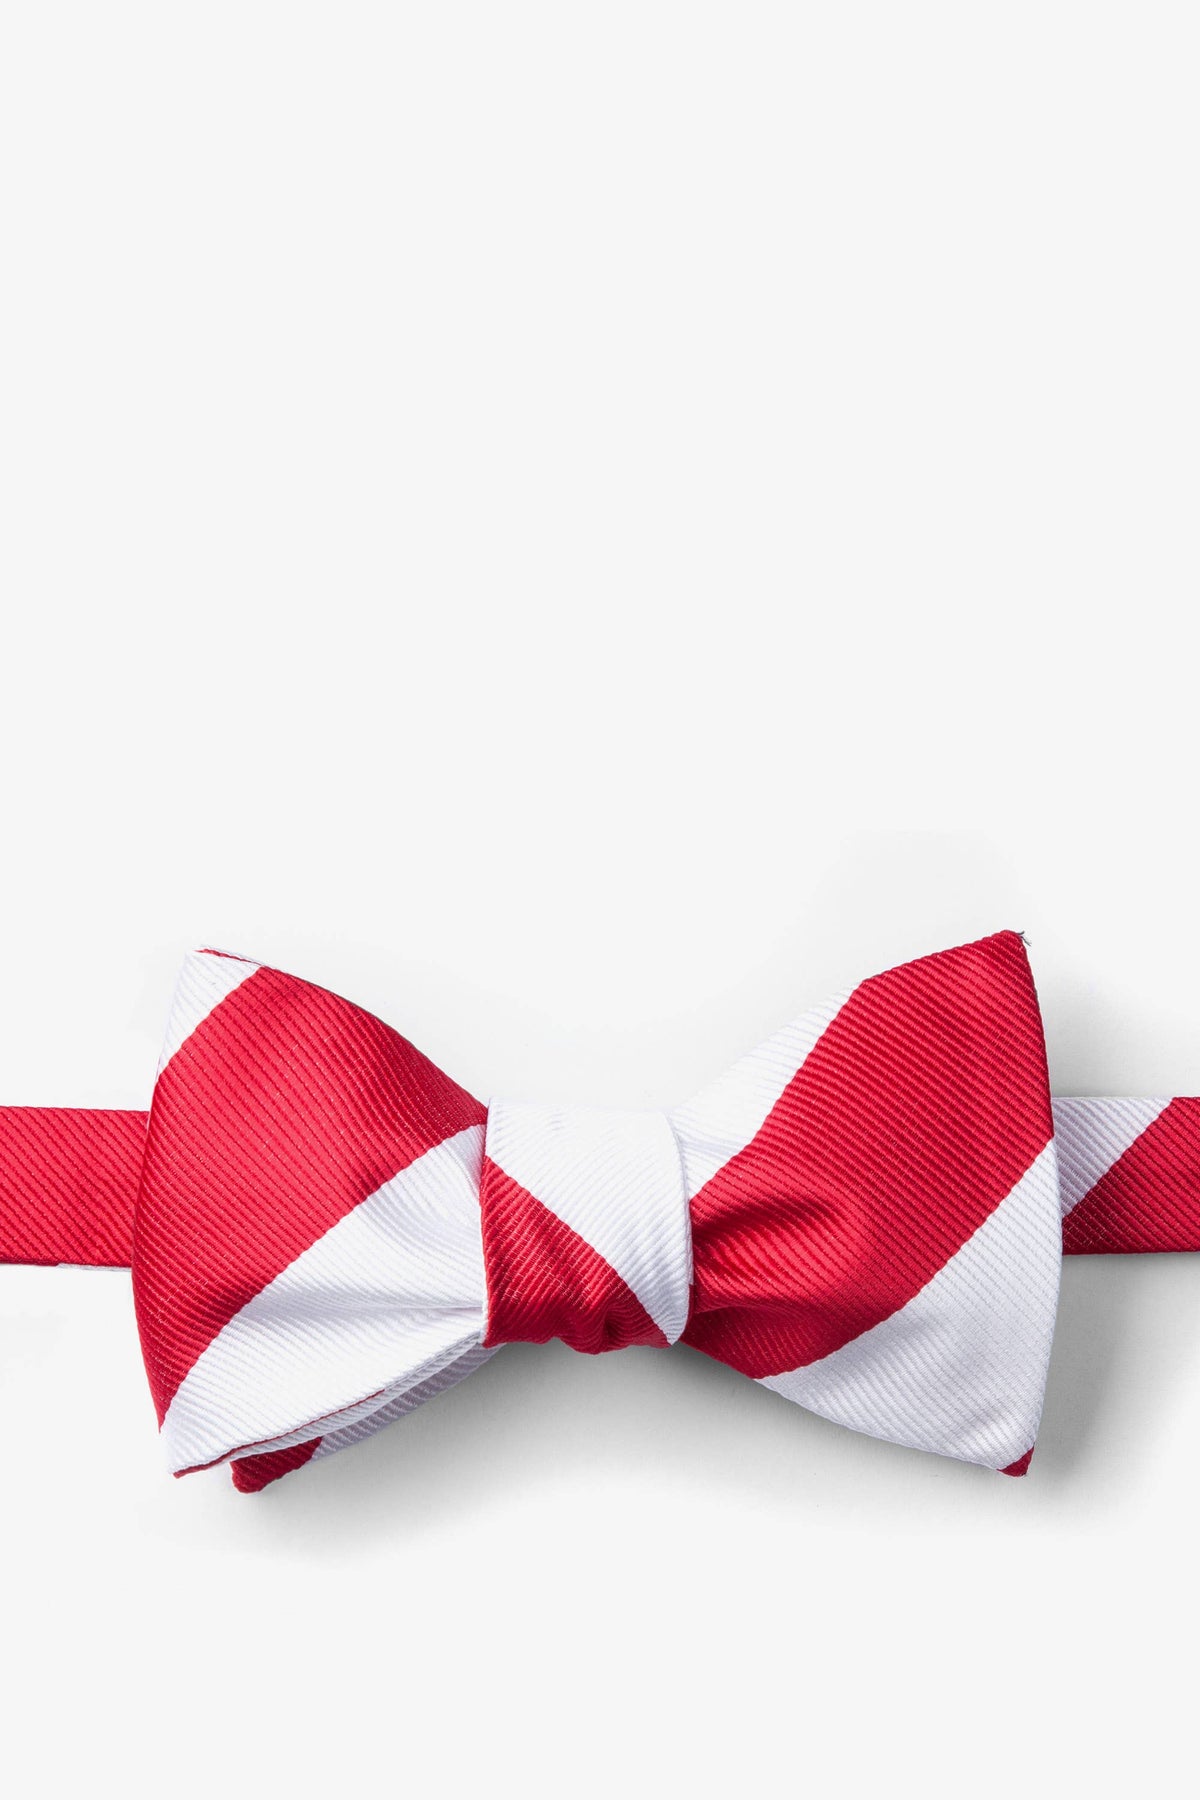 Red and White College Collegiate Stripe - School Colors: Self-Tie Bowtie